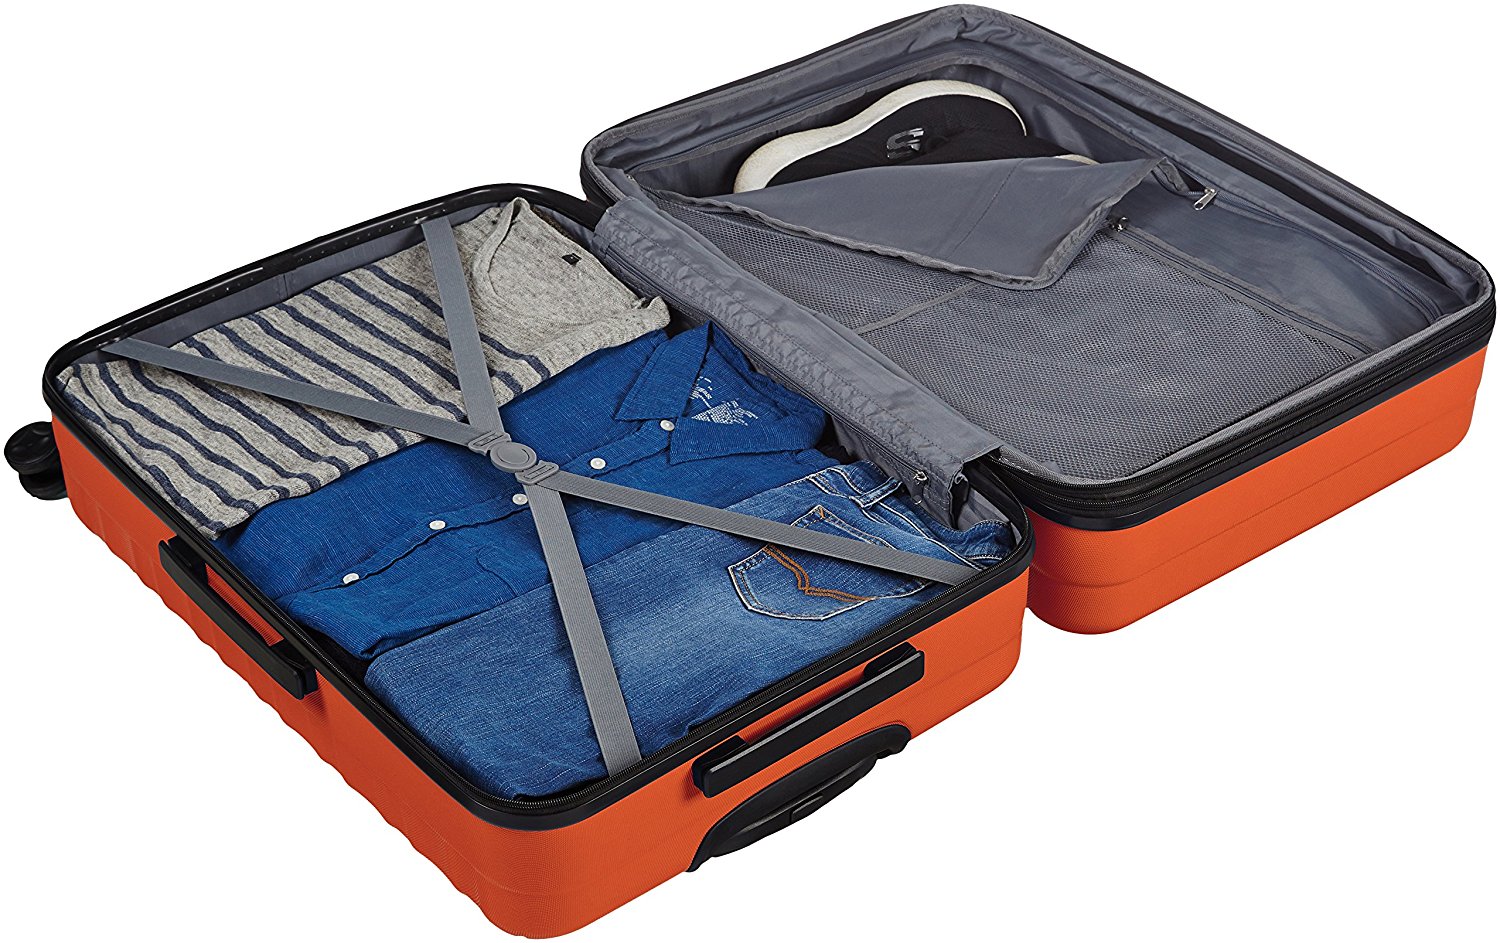 3-piece AmazonBasics hardside spinner luggage set for $113